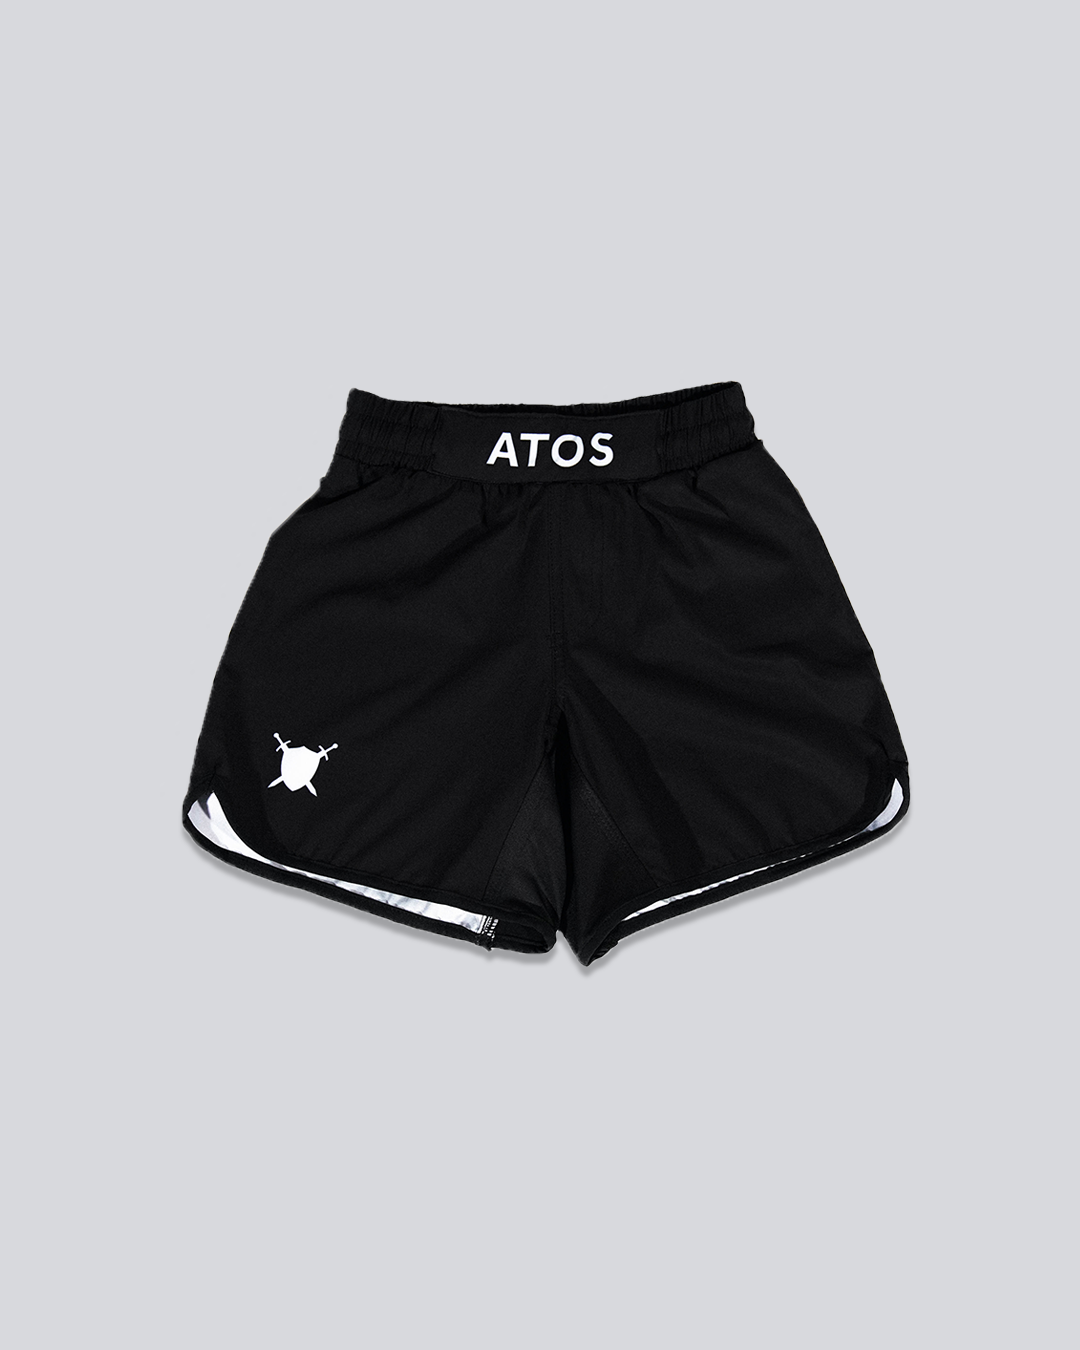 Atos Grappling Shorts (Youth)